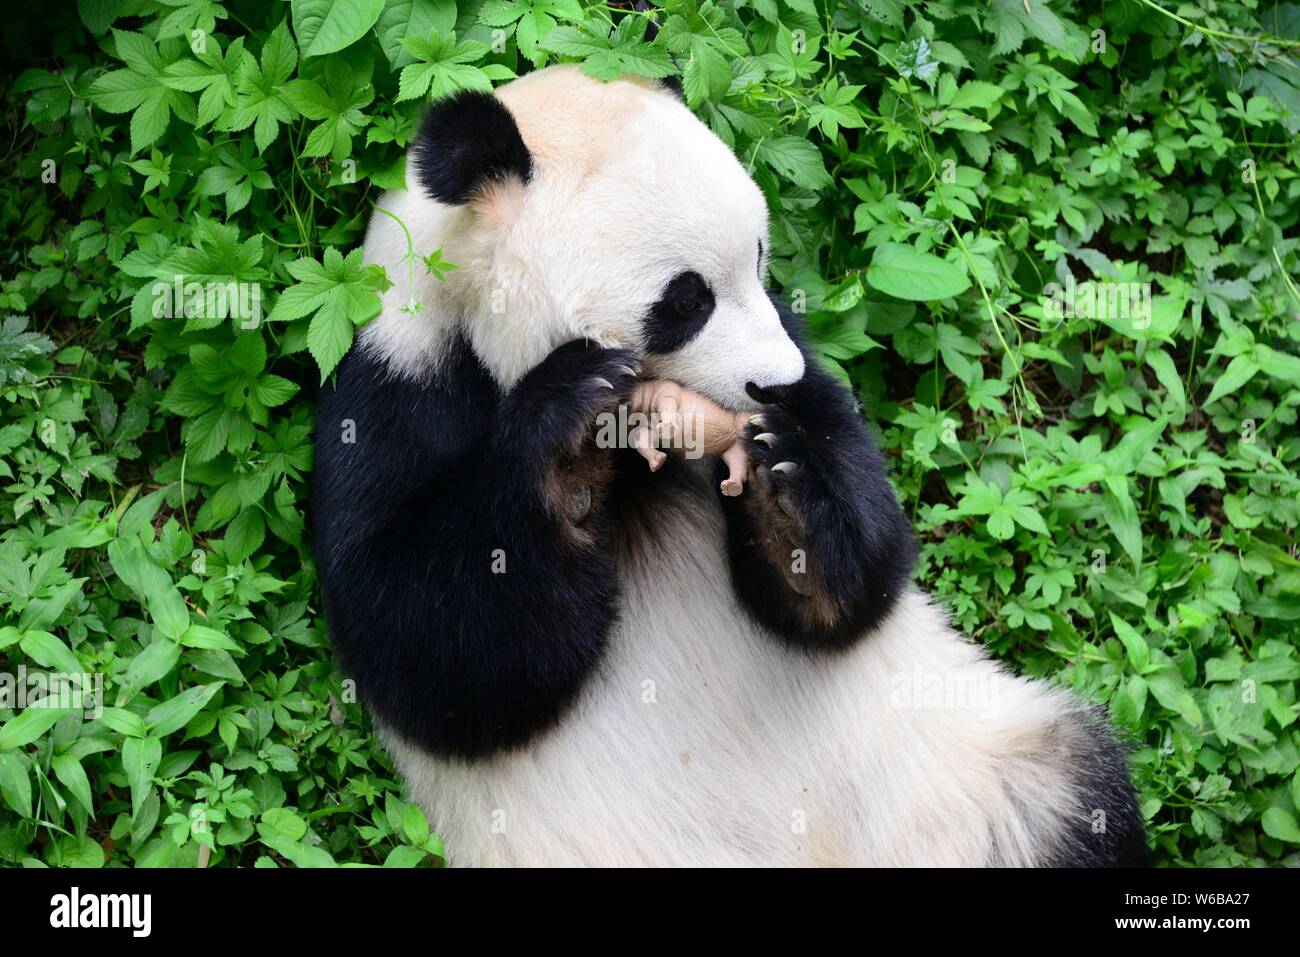 Un panda géant embrasse un rhino toy de zoo de Pékin à Beijing, Chine, 19 mai 2018. Un panda géant embrassé un jouet de rhinocéros dans les bras et l'embrassa à Beij Banque D'Images